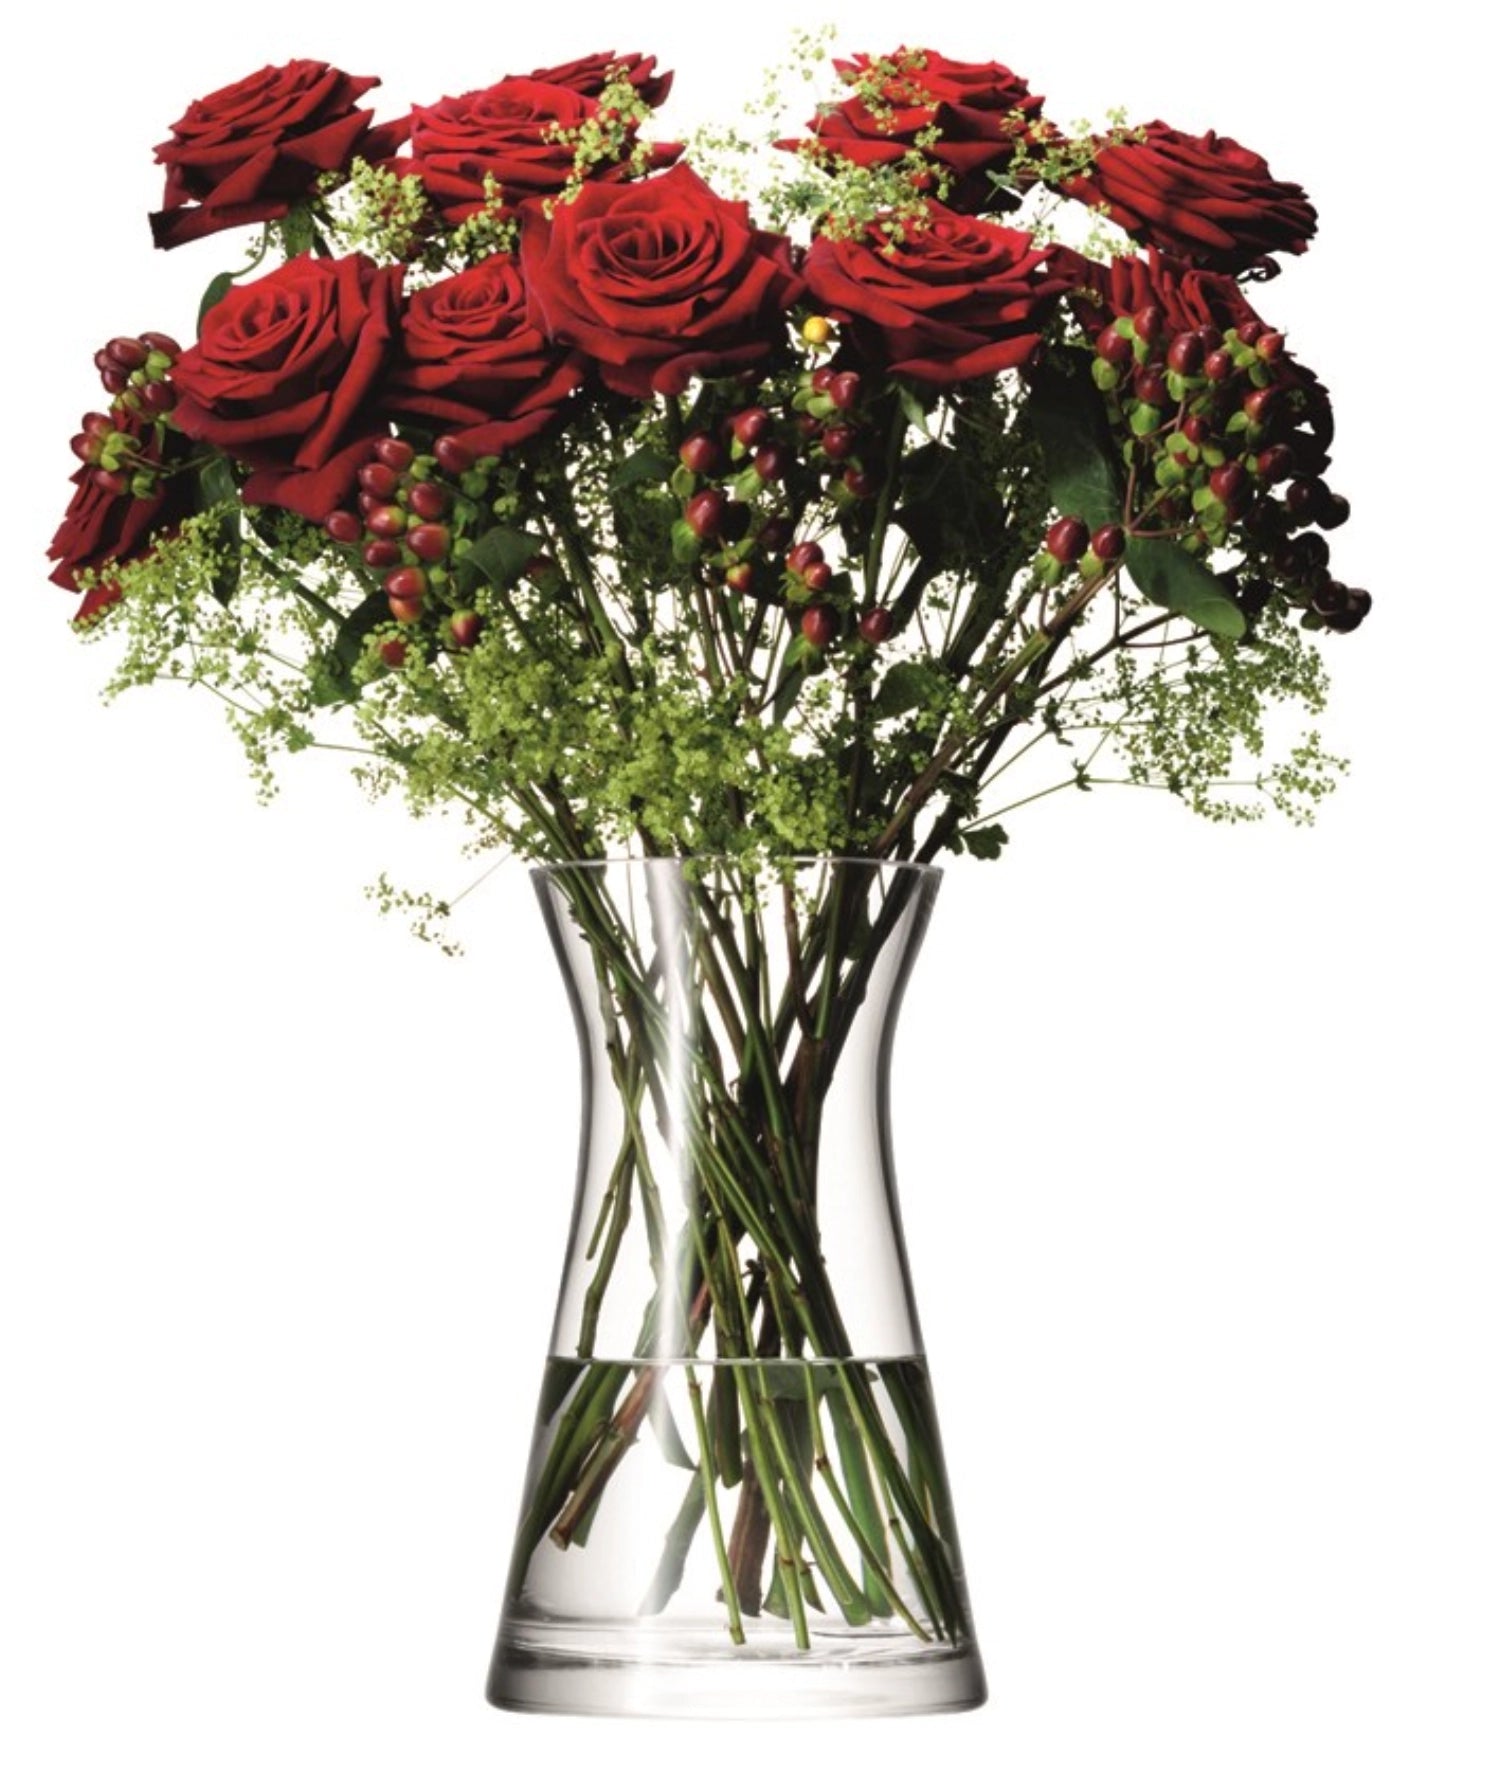 Flower Vase für gemischte Blumensträusse H29cm - klar - KAQTU Design